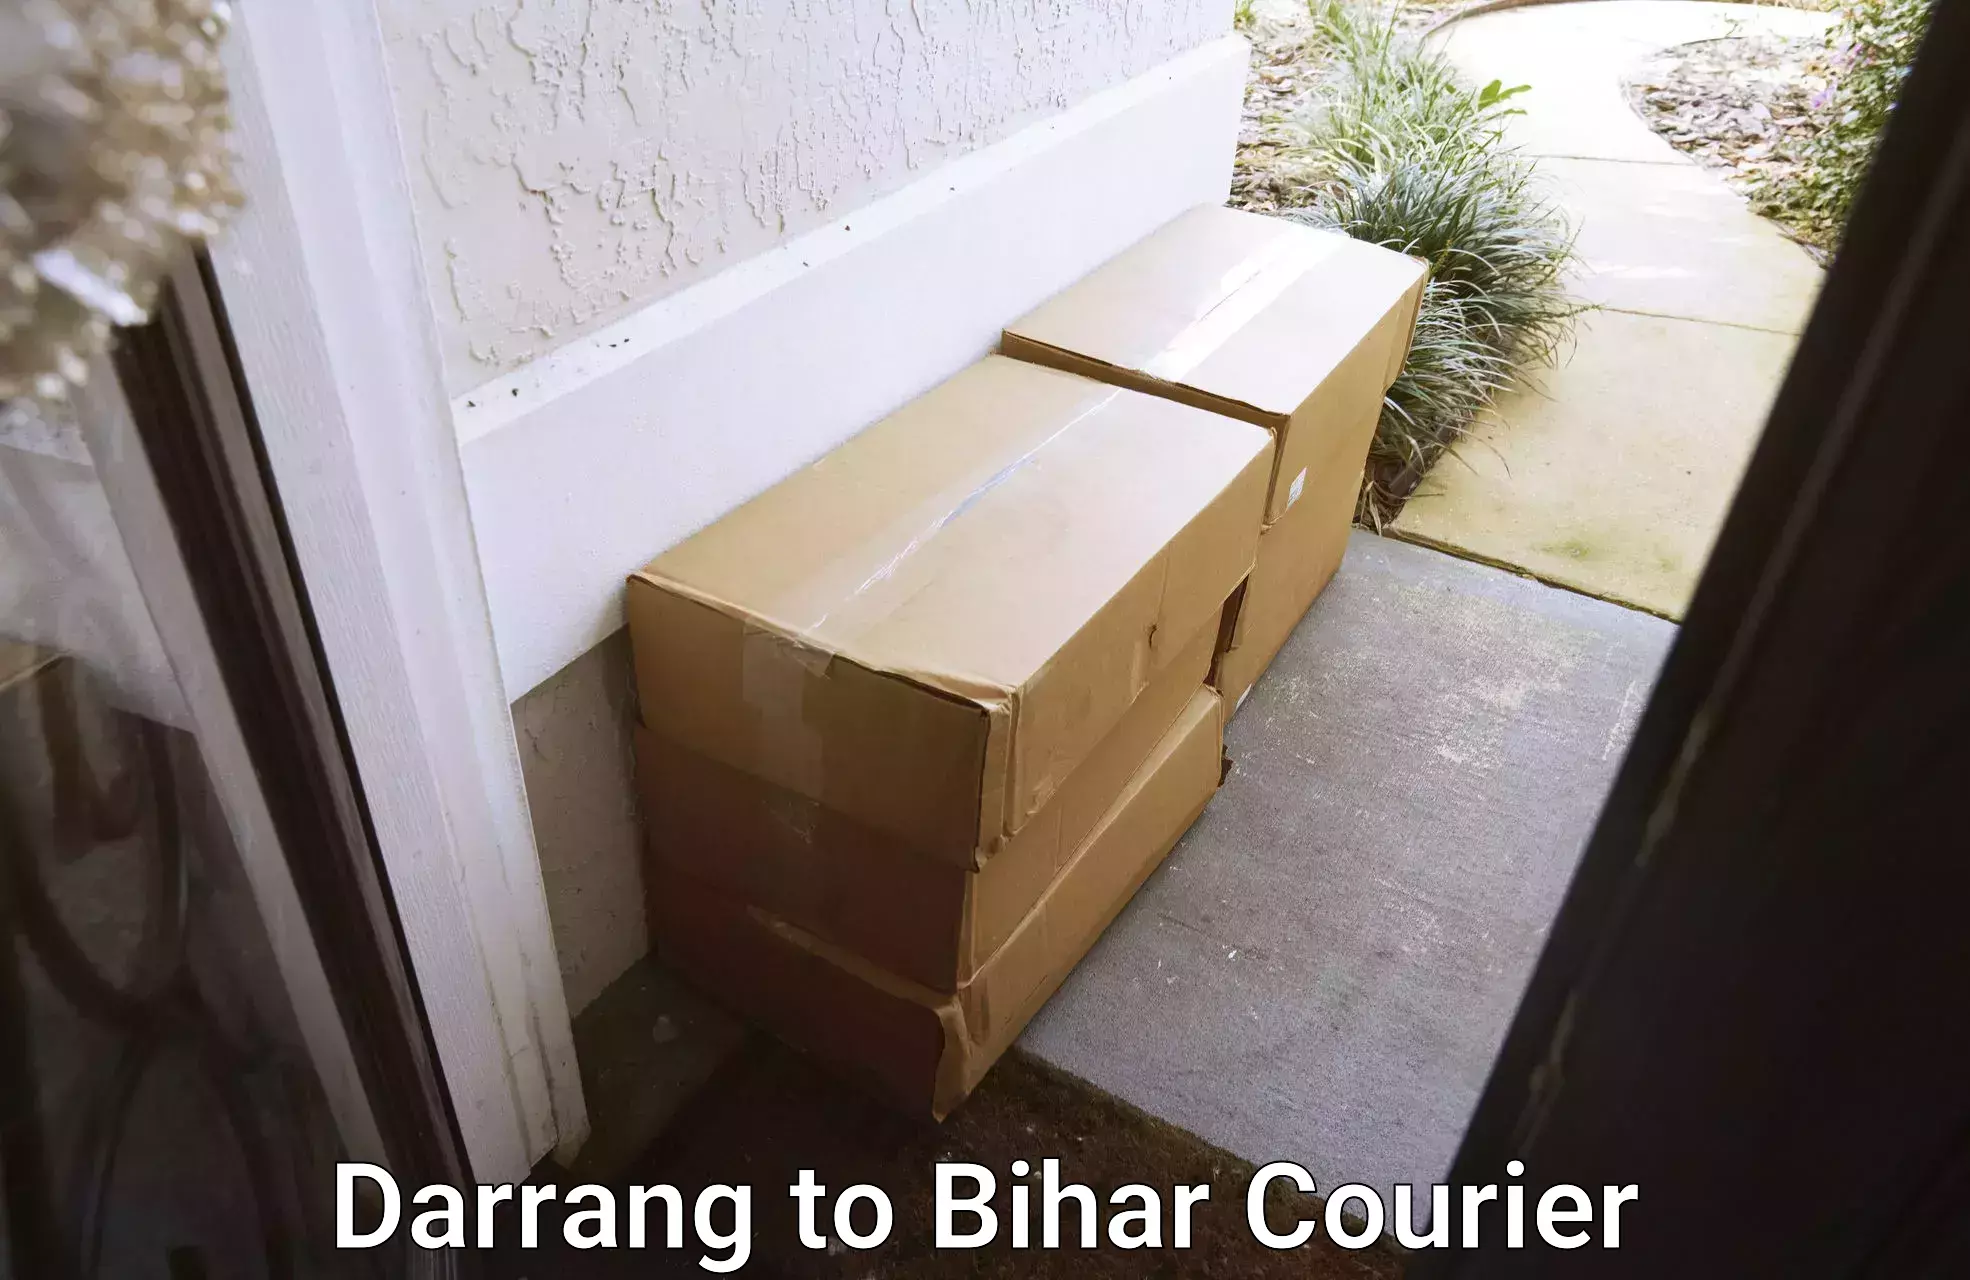 Advanced logistics management Darrang to Bihar